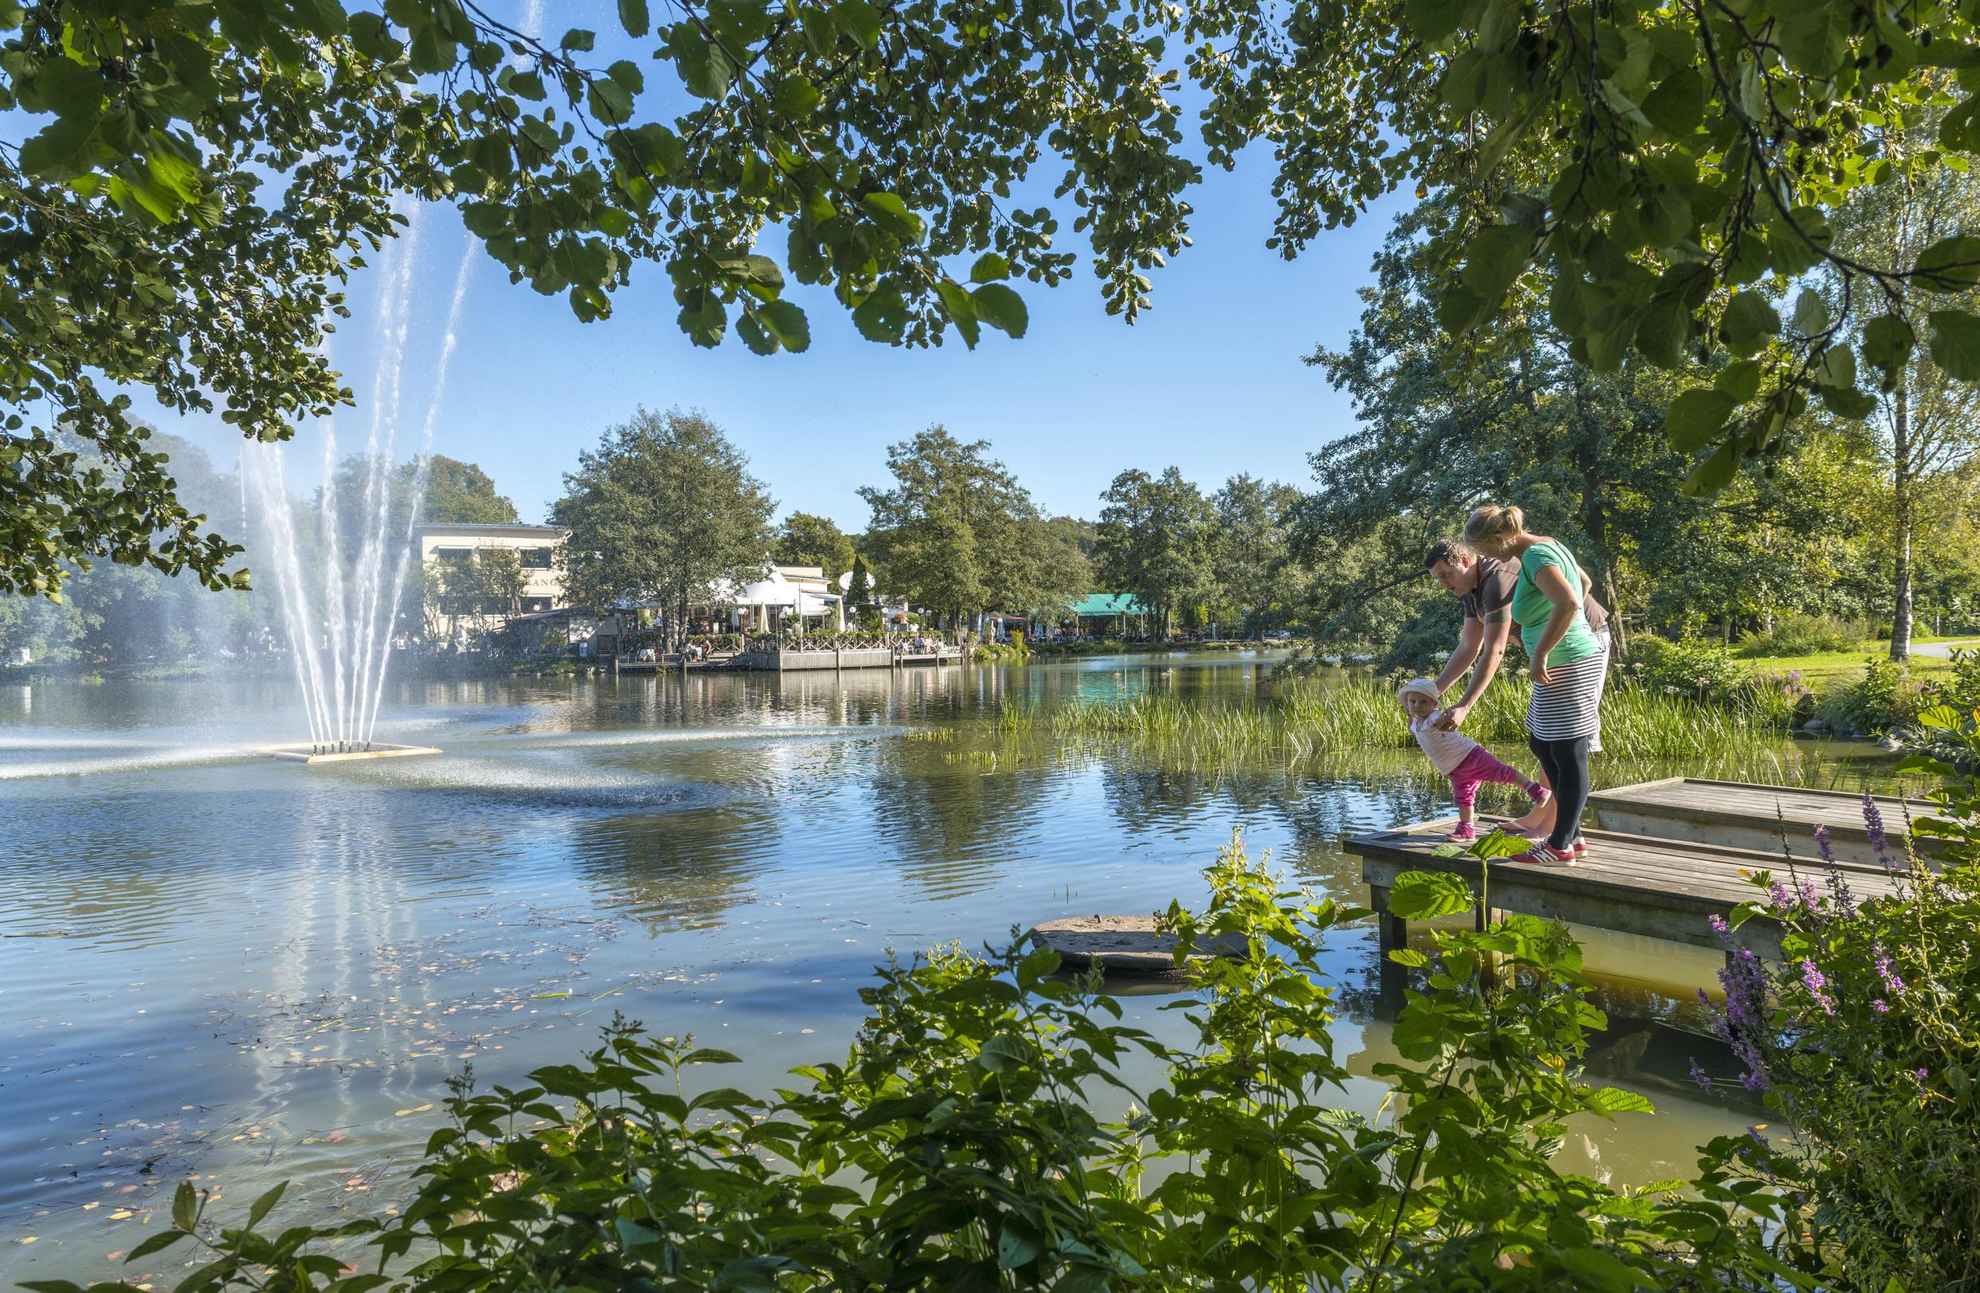 Ein Paar mit einem kleinen Kind steht auf einem Steg neben einem Teich mit Springbrunnen, umgeben von Grünflächen im Park Slottsskogen. Im Hintergrund sieht man ein Außenrestaurant.